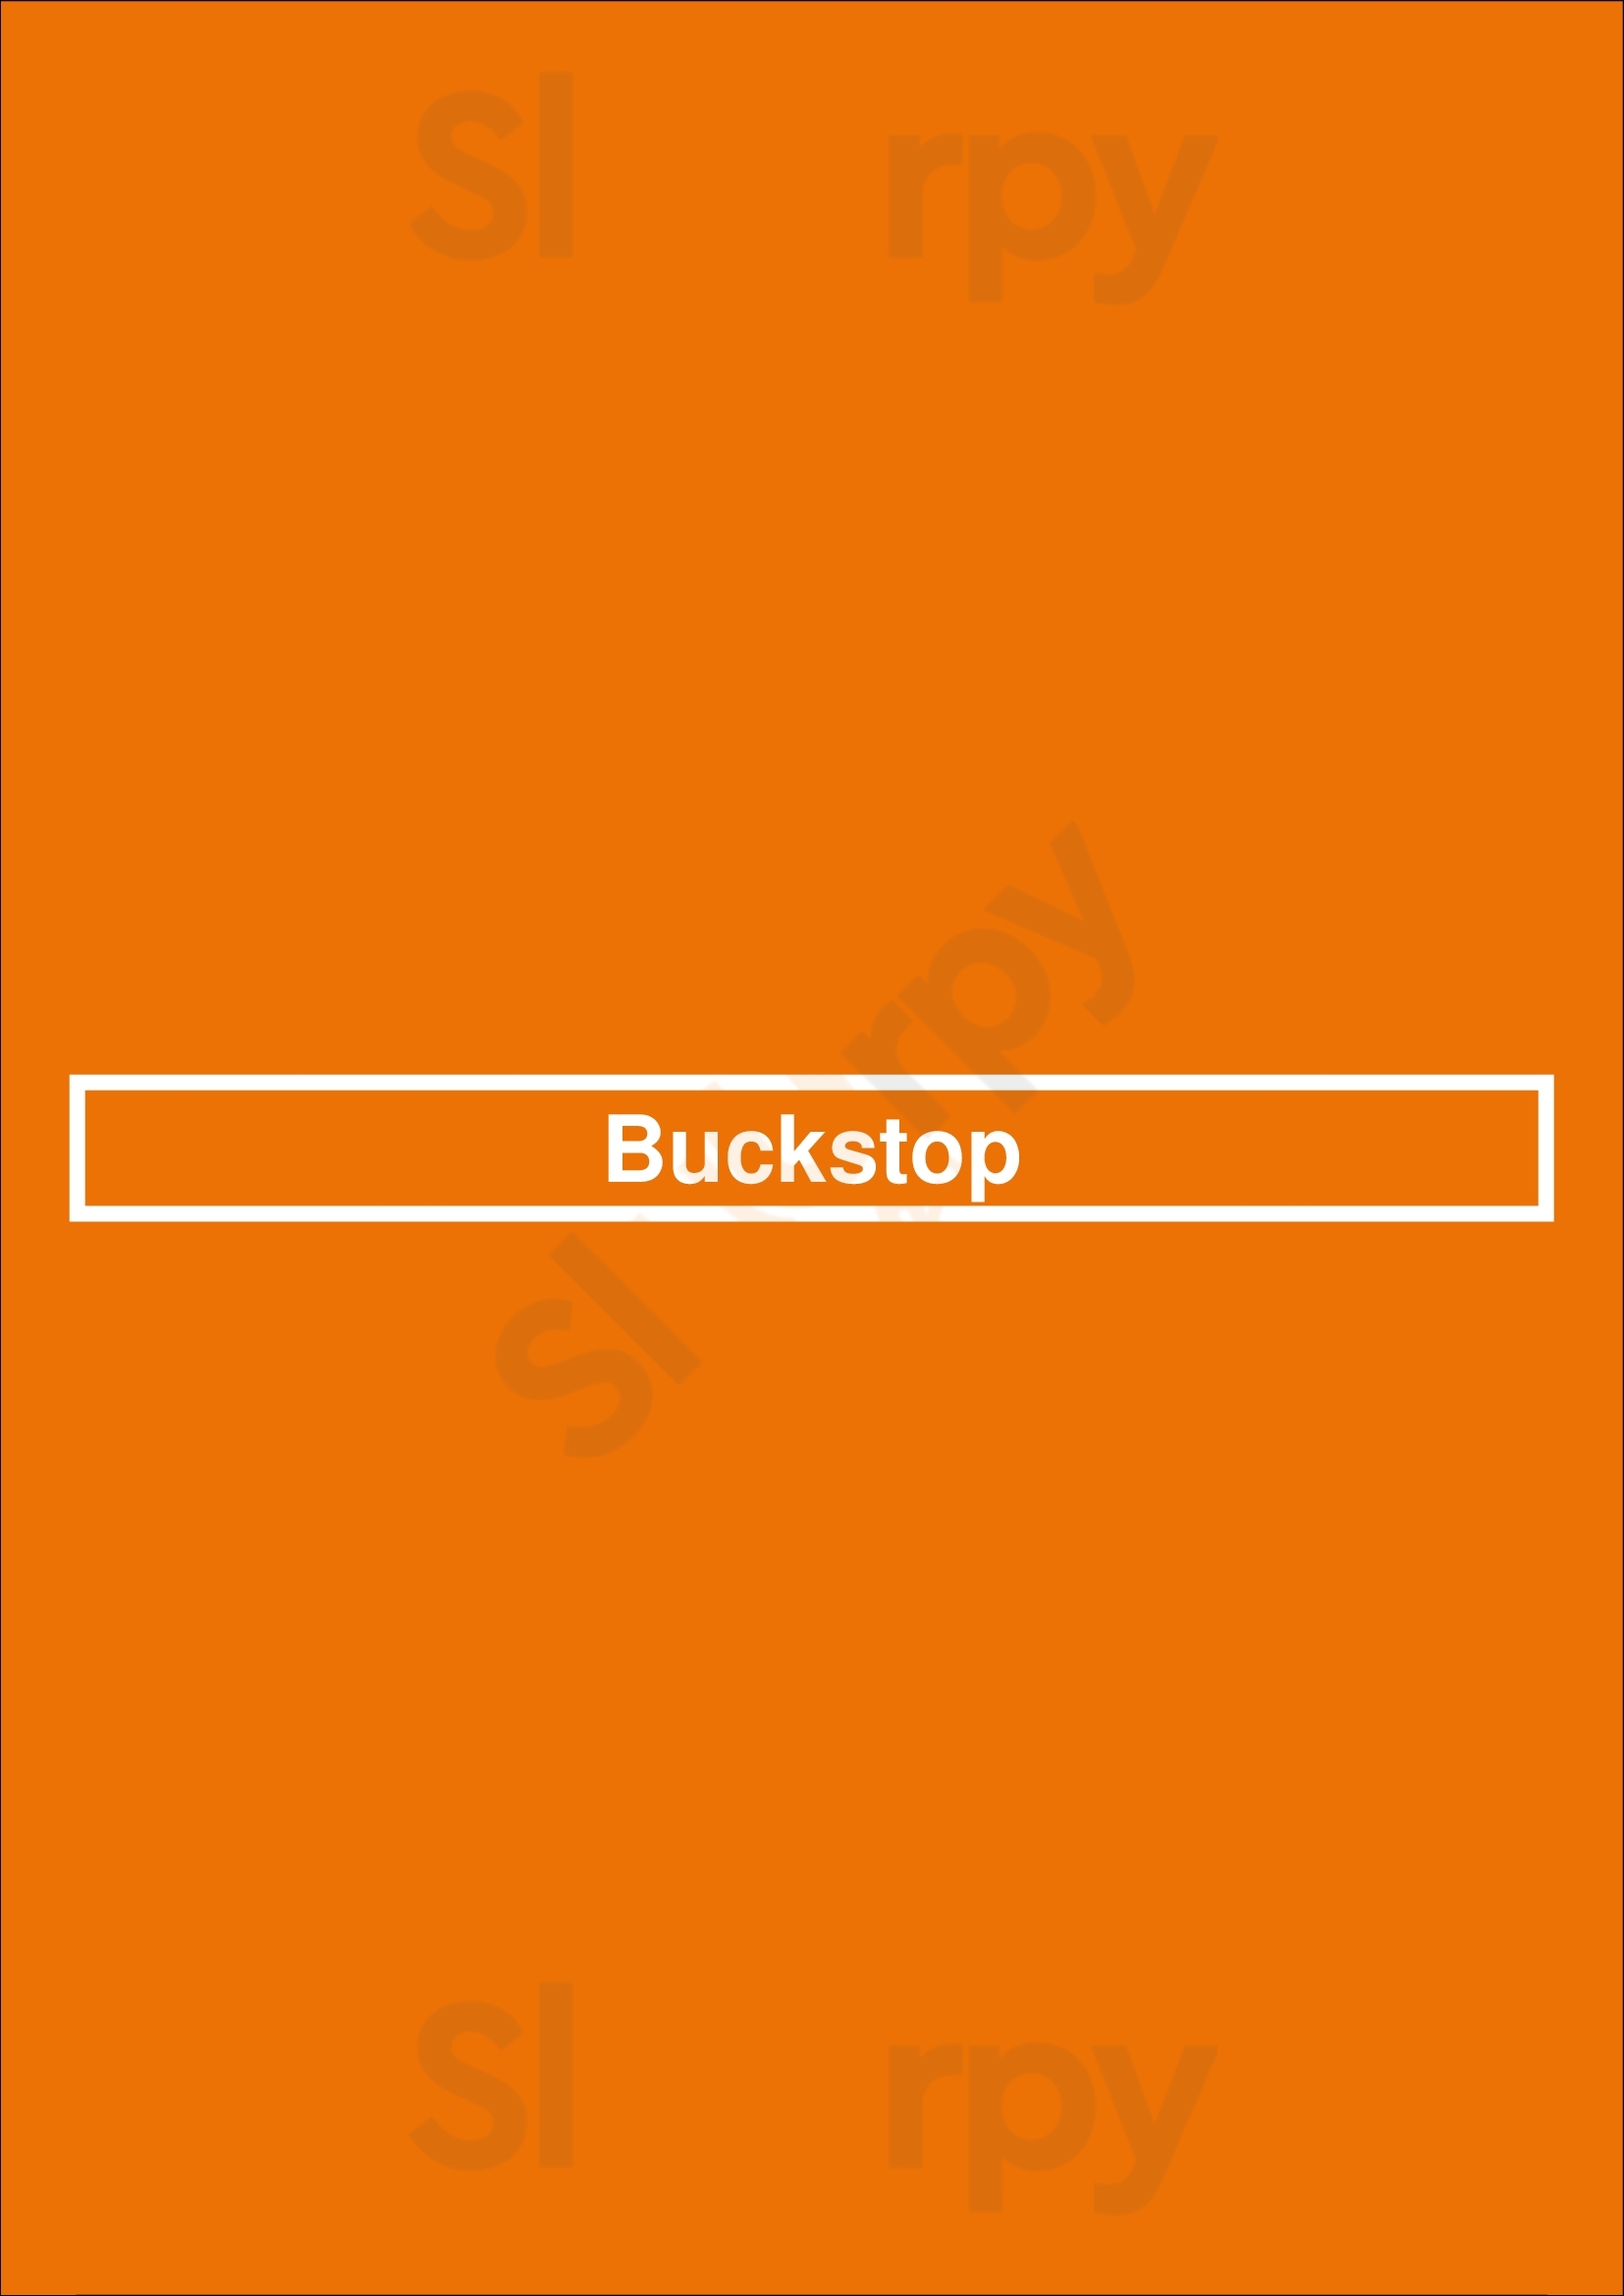 Buckstop Vancouver Menu - 1